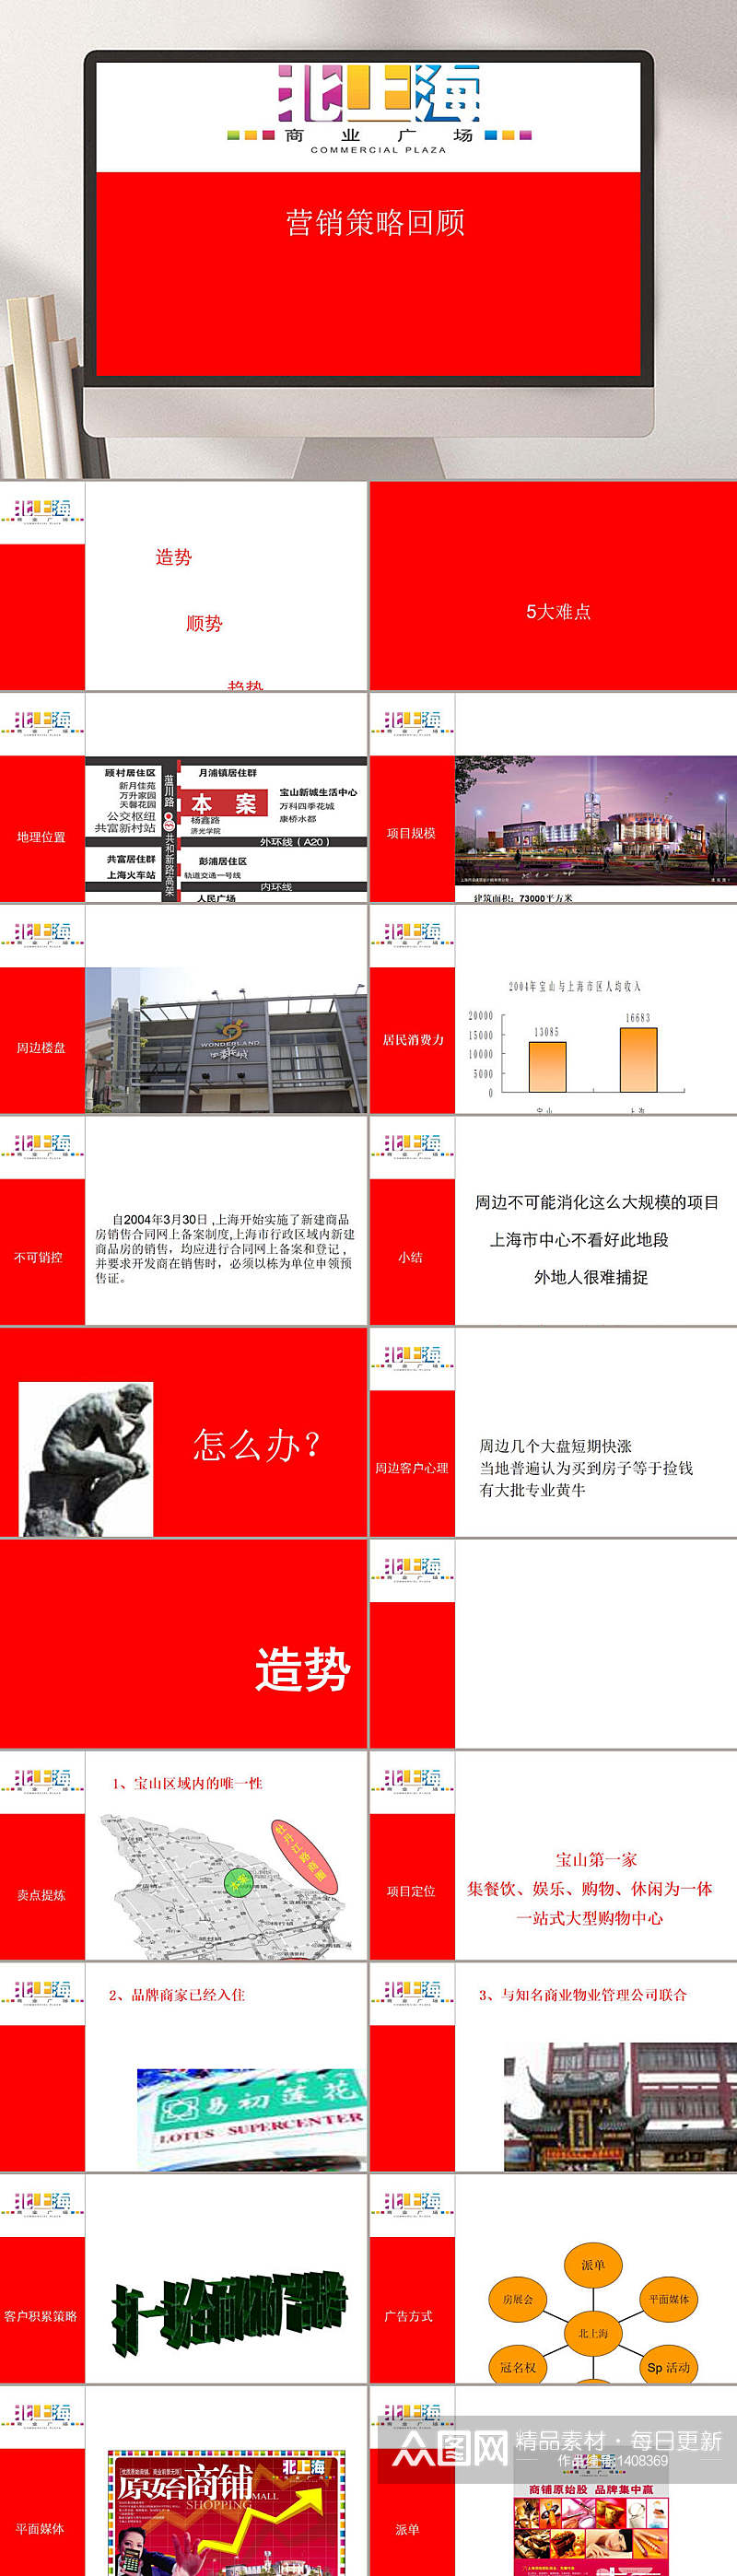 北上海营销策略回顾PPT模板素材